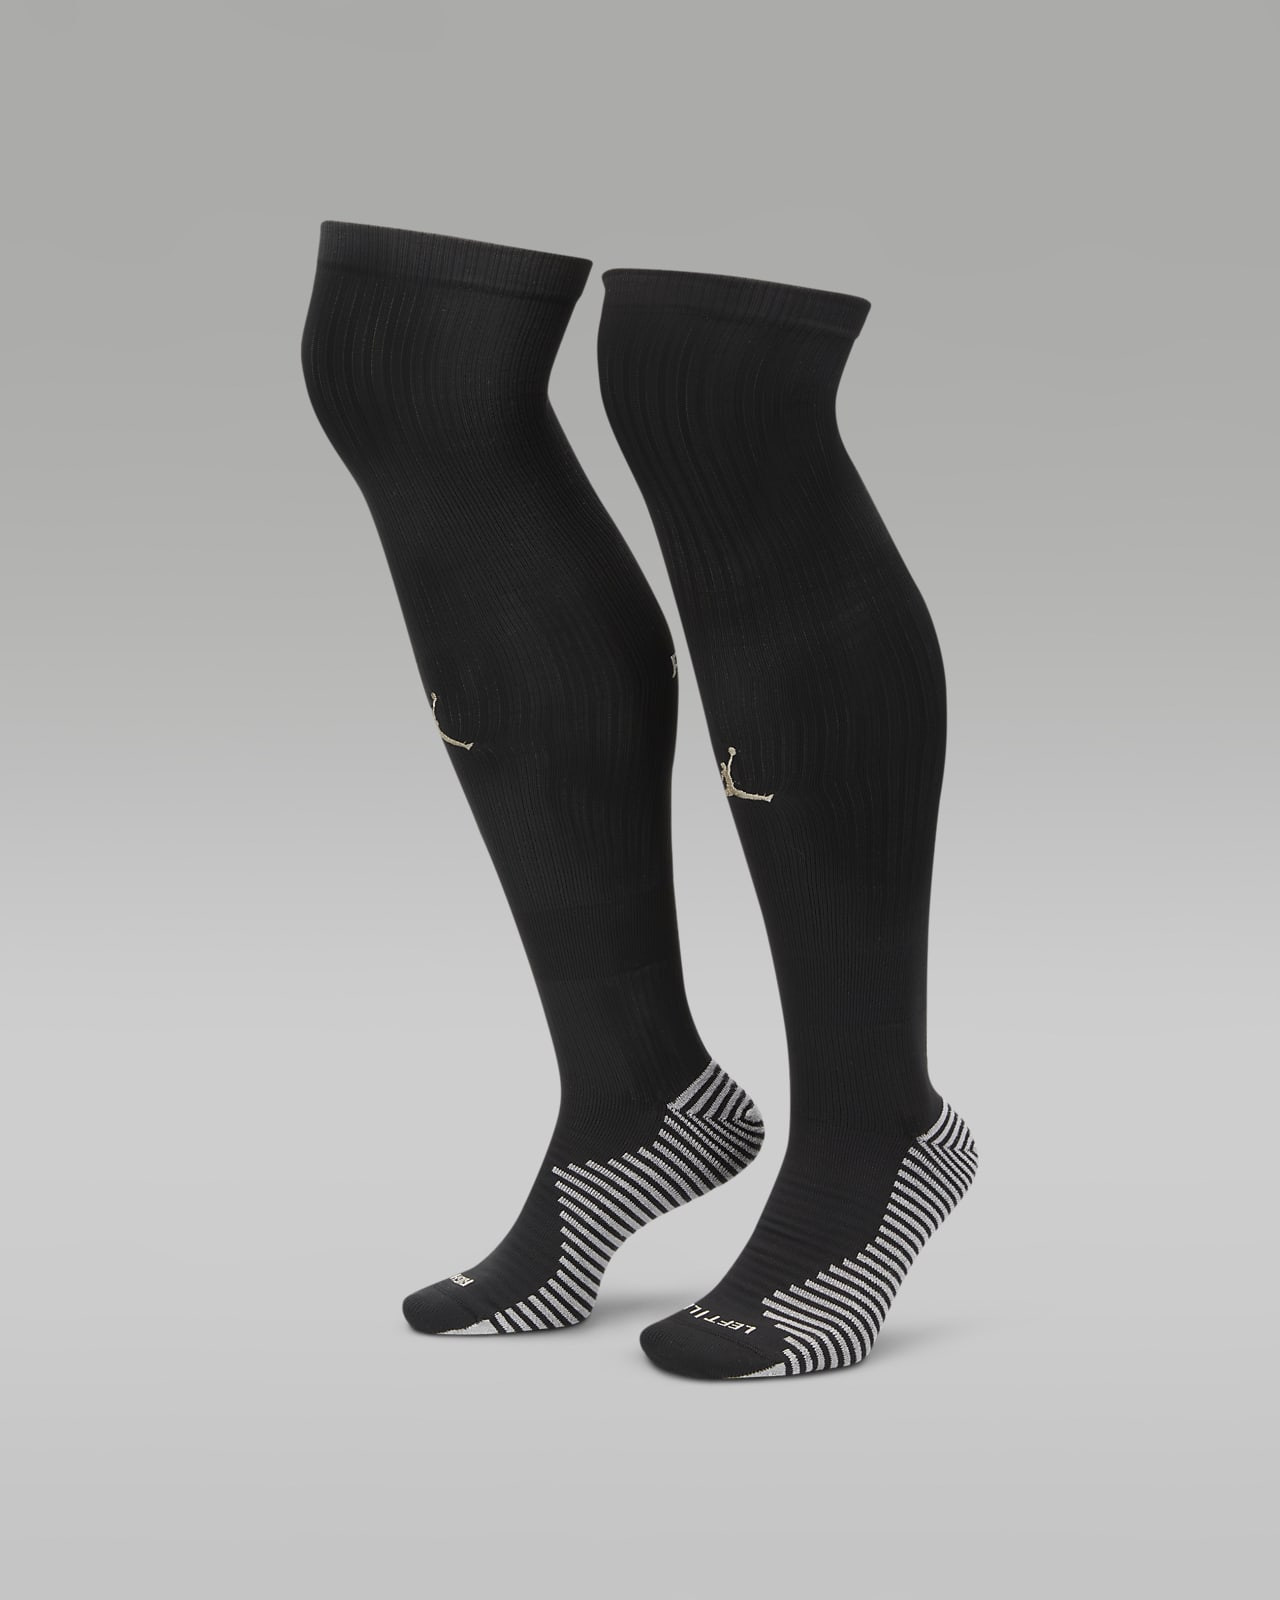 Ποδοσφαιρικές κάλτσες μέχρι το γόνατο Παρί Σεν Ζερμέν Strike